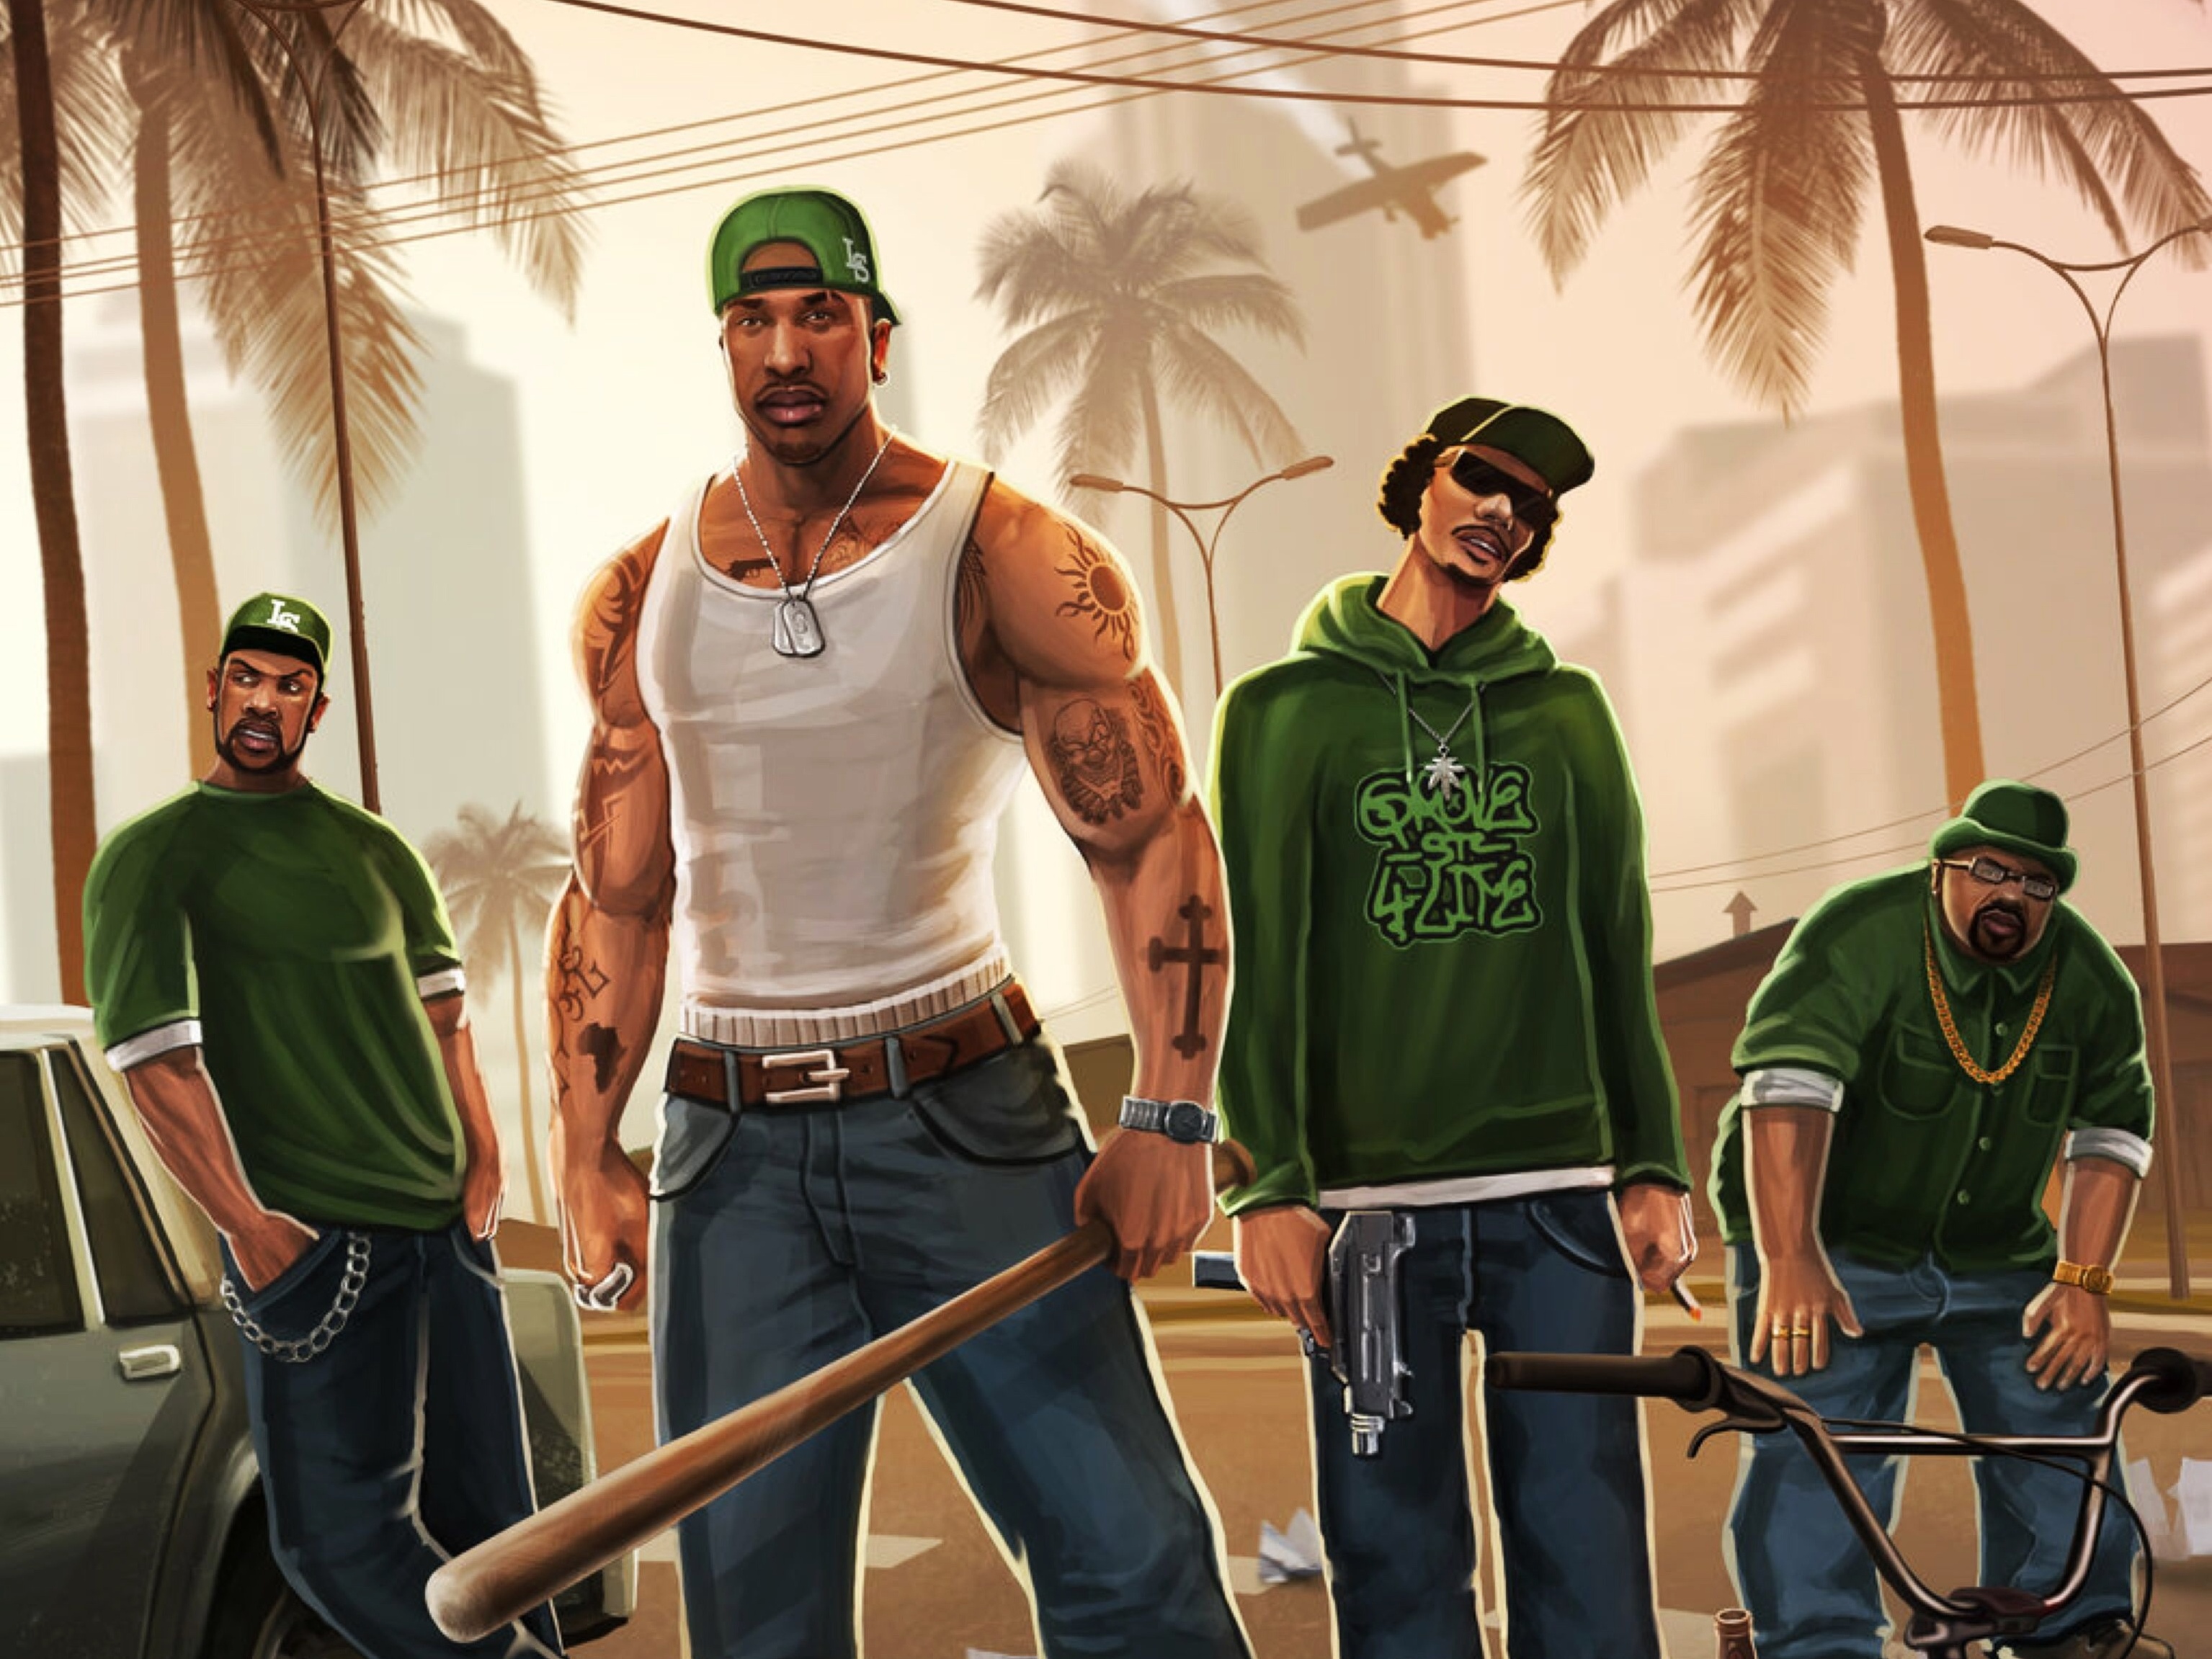 Preços baixos em Grand Theft Auto: San Andreas 2004 lançado Video Games